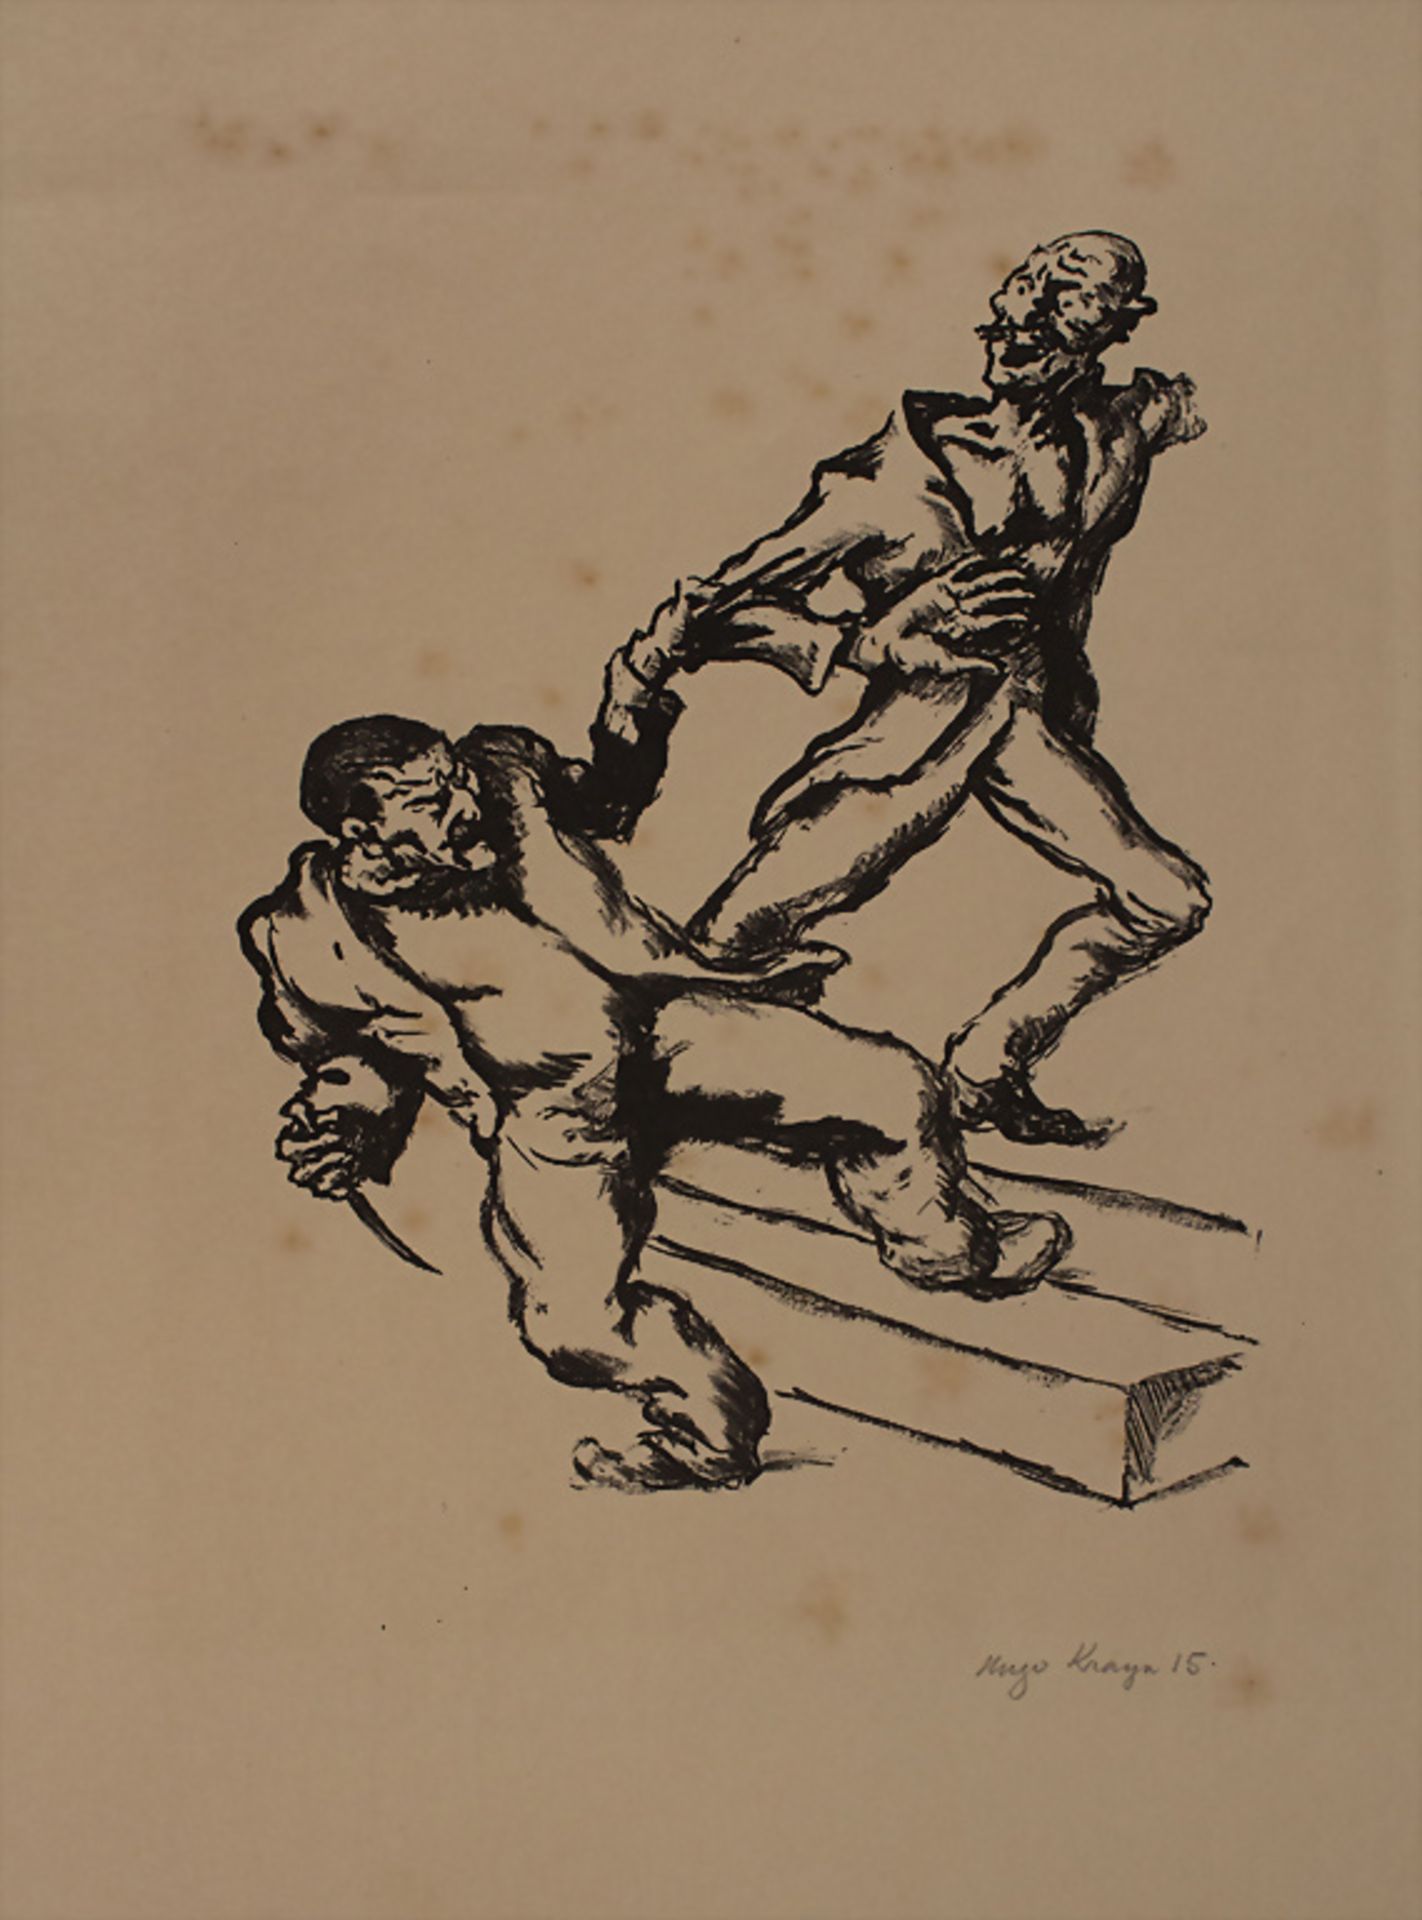 Hugo KRAYN (1885-1919), 'Der Angriff' / 'The Attack', Deutschland, 1915